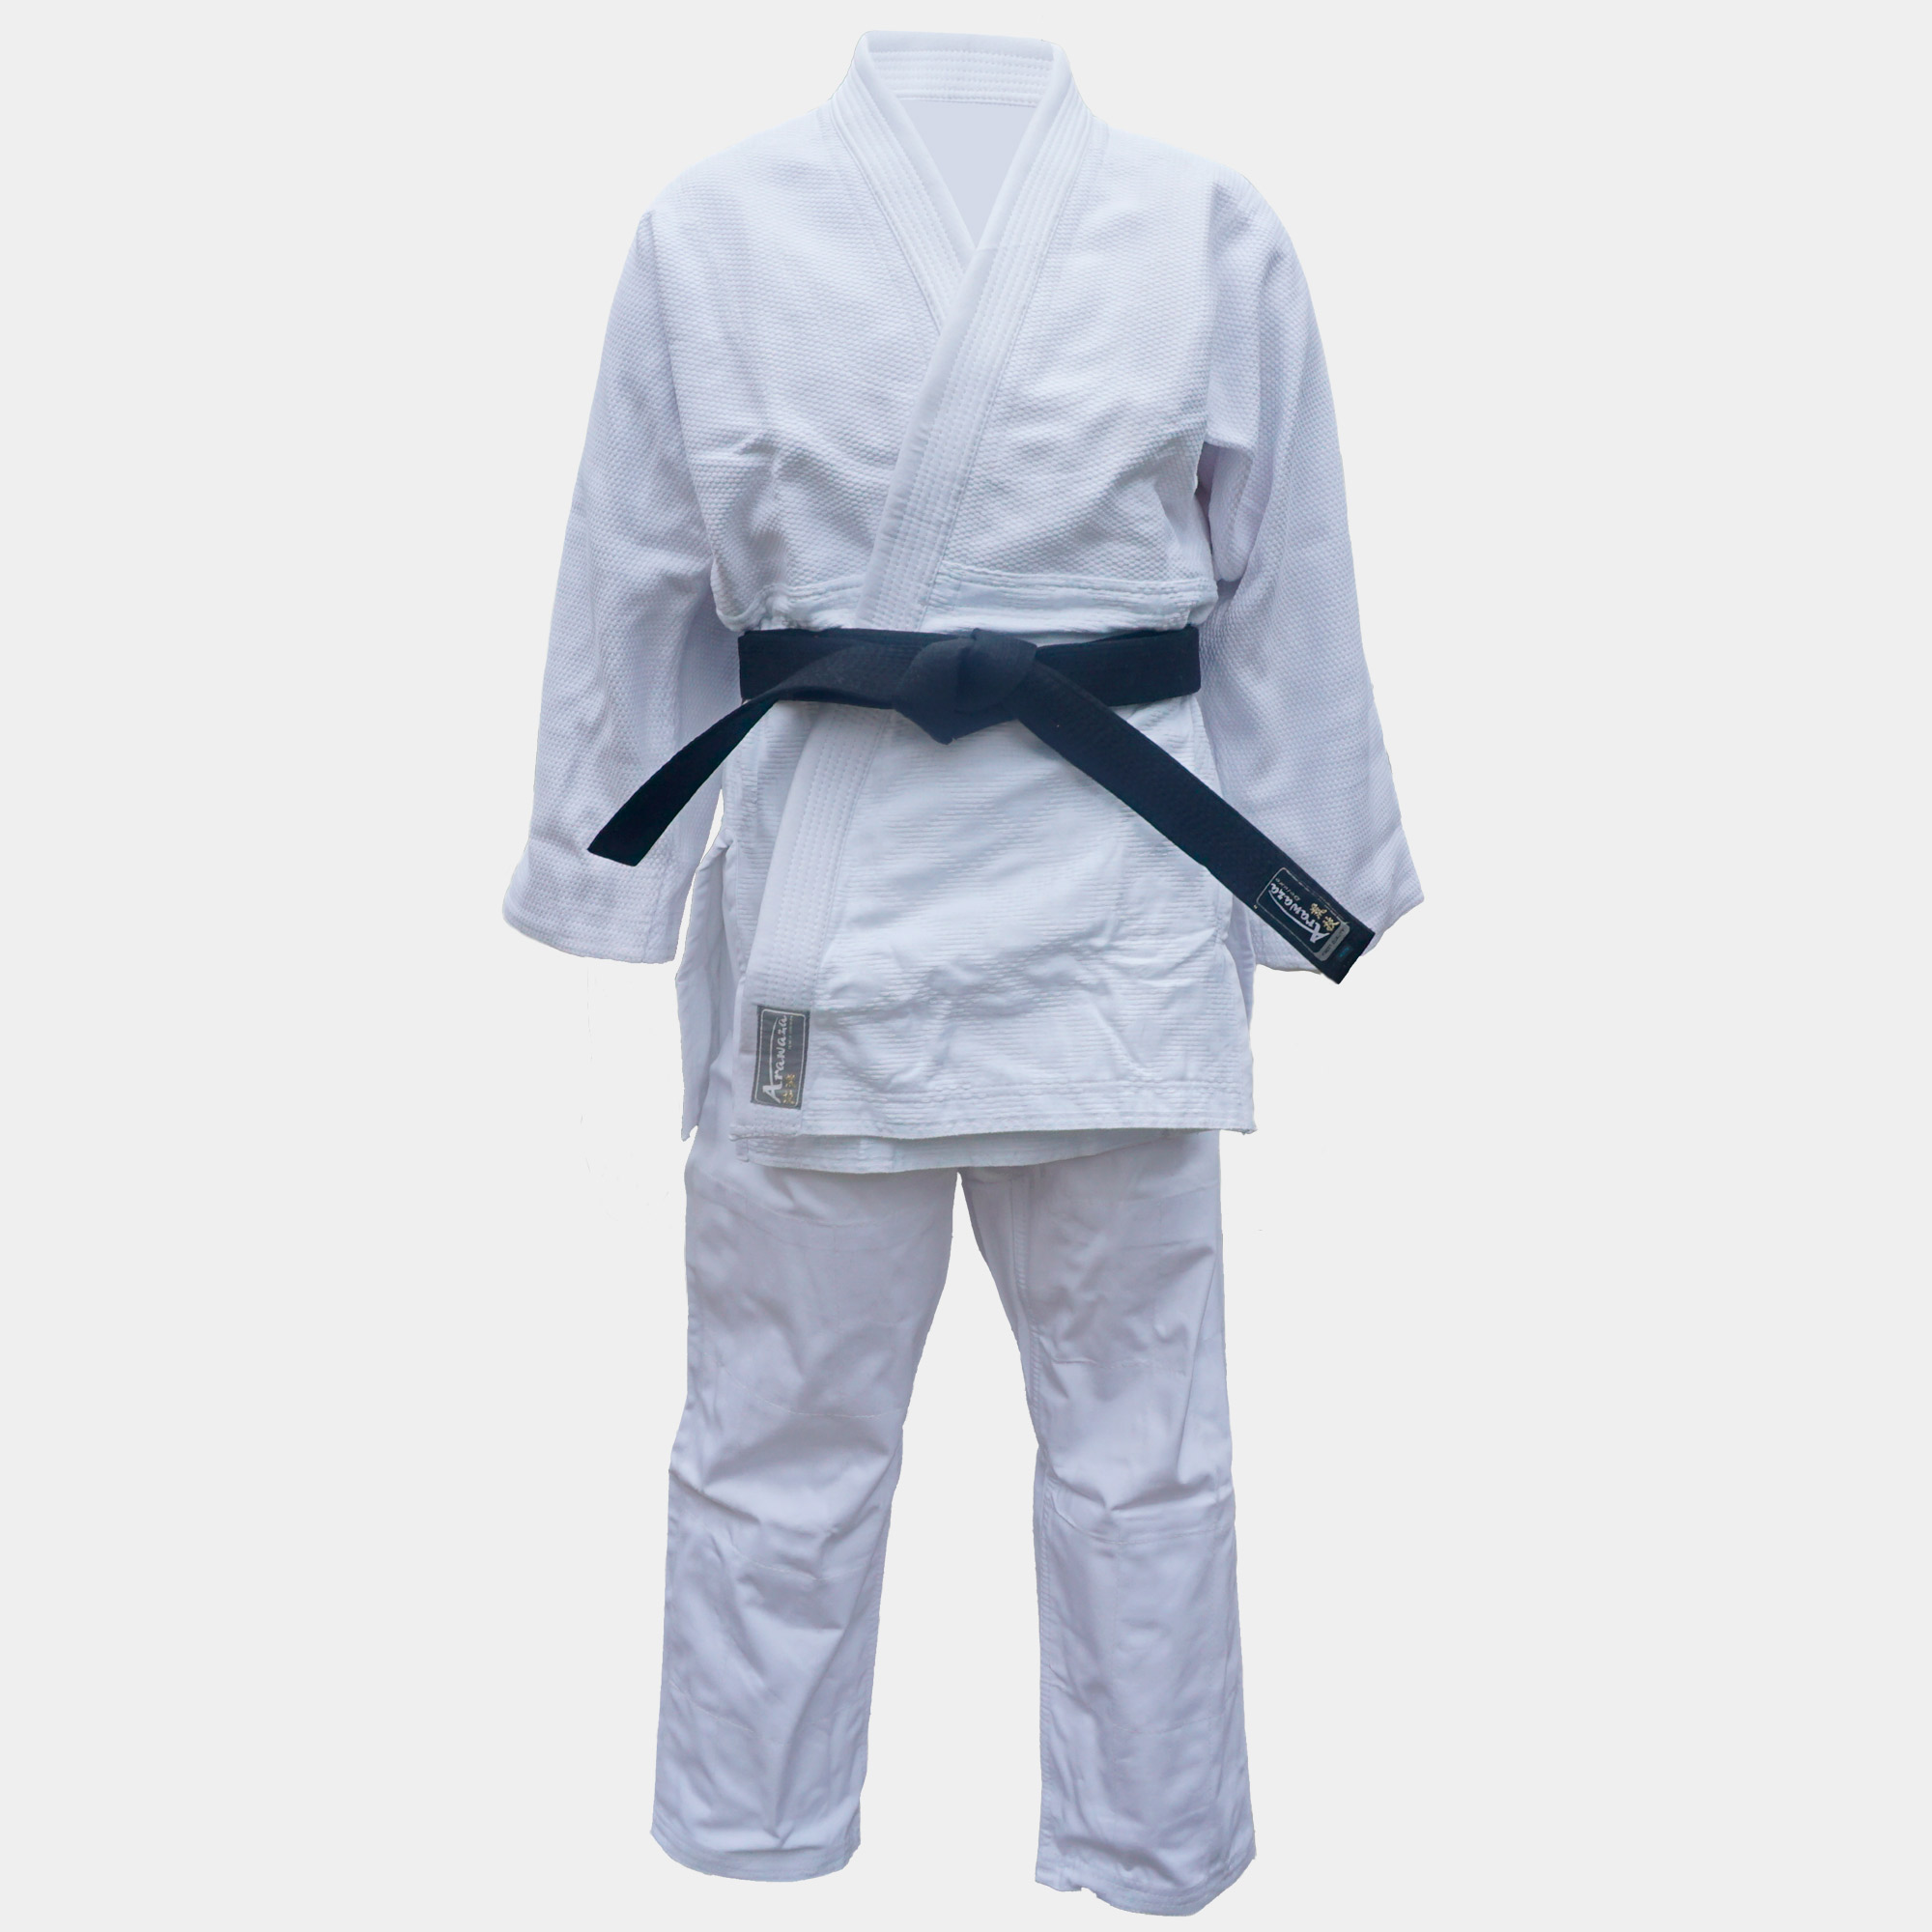 New Karate Jitsu White Uniform Kimono Gi Middle Weight Suit Size 3/160 to 6/190 